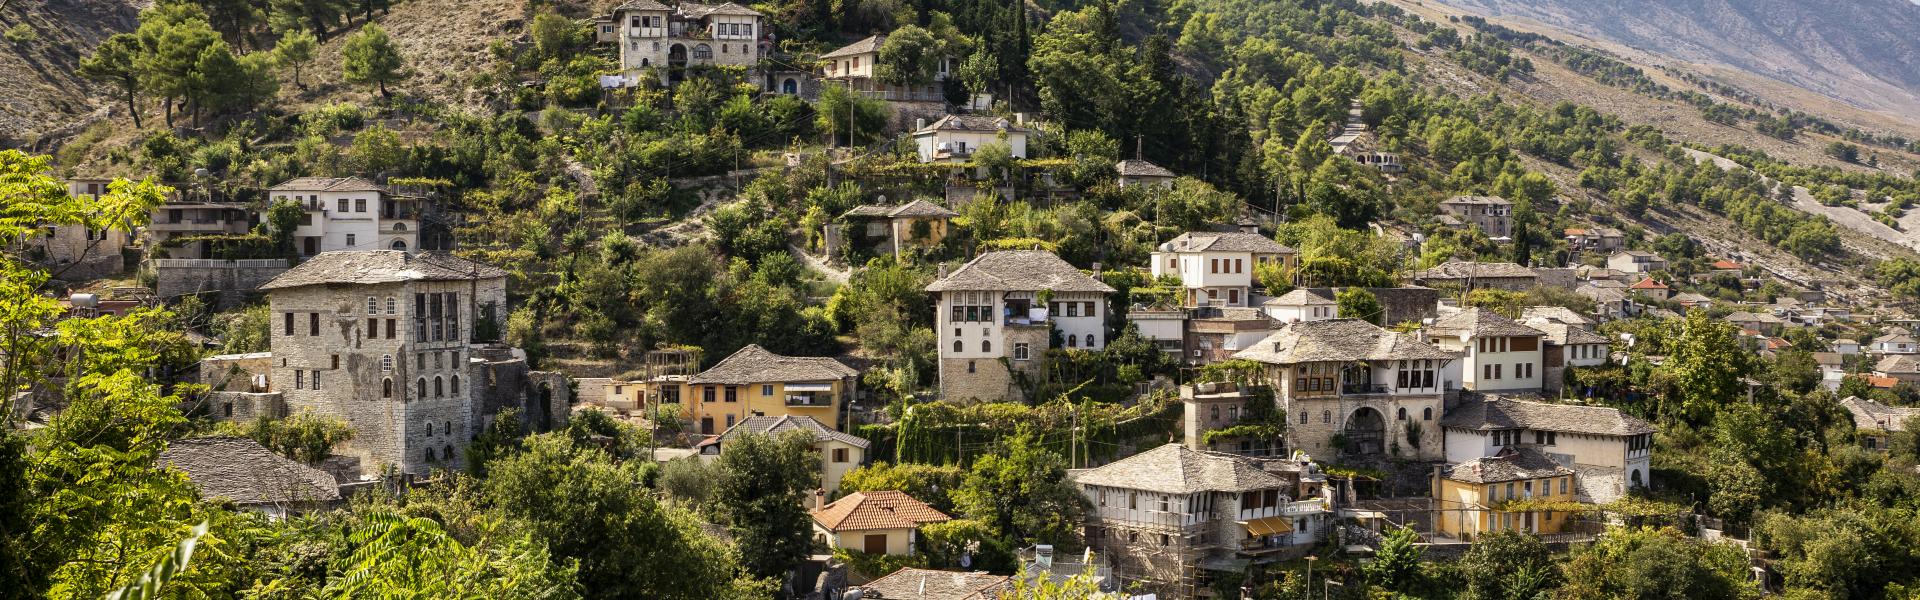 Alquileres y casas de vacaciones en Albania - Wimdu